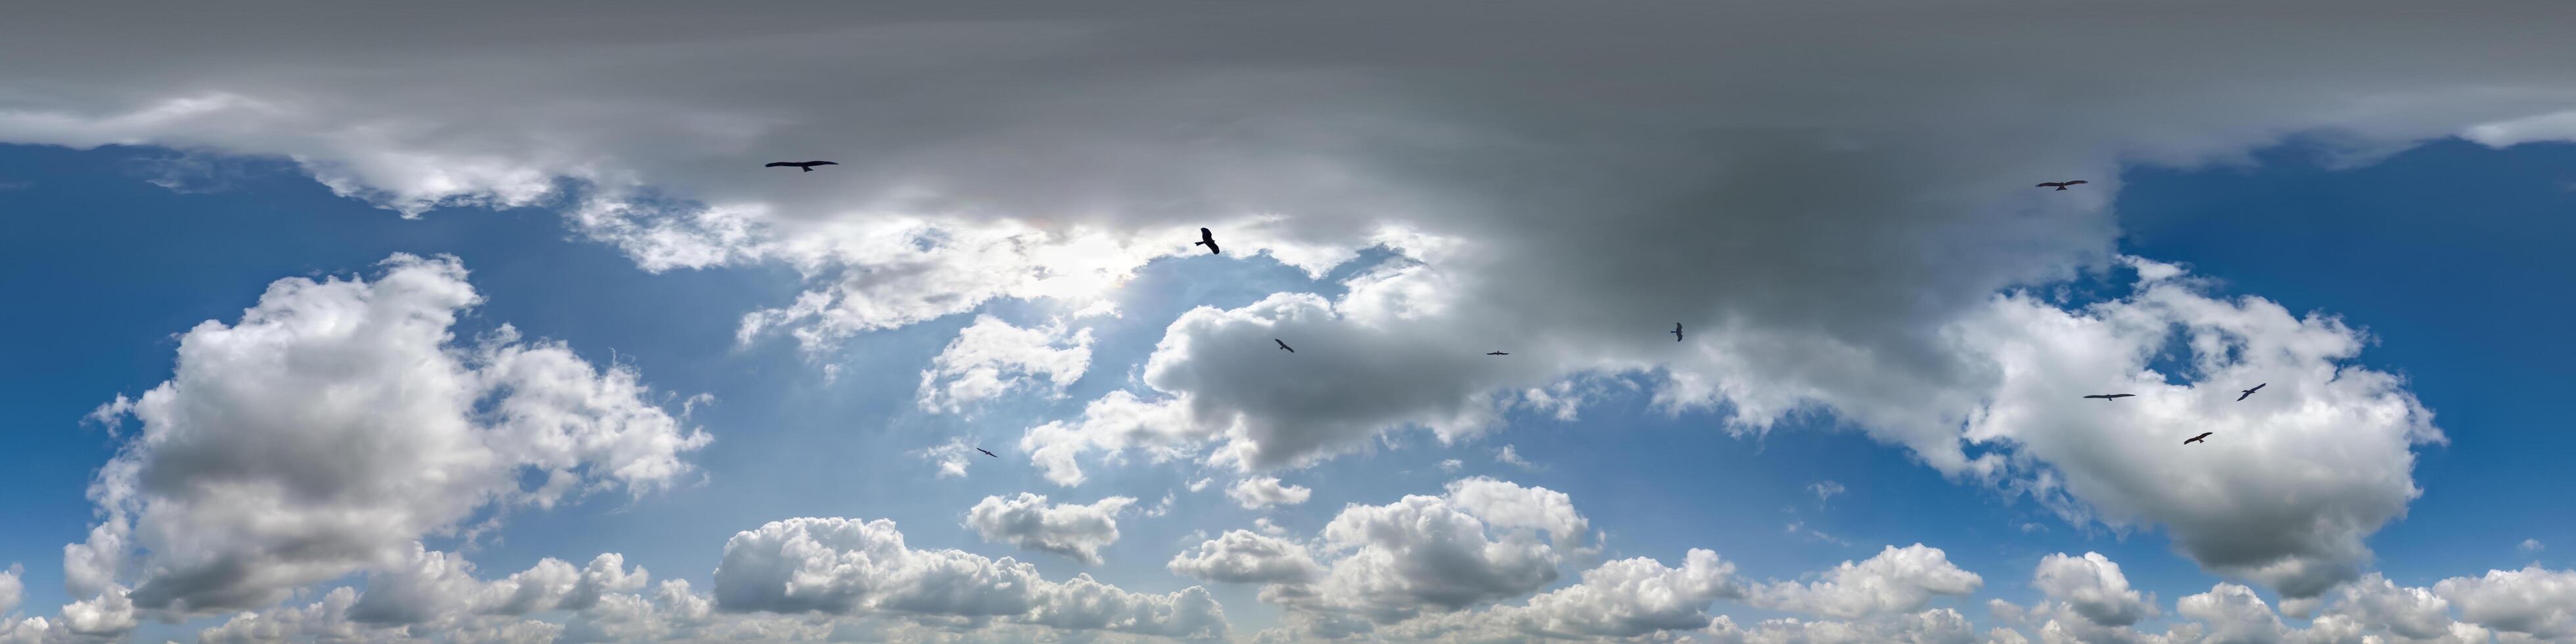 senza soluzione di continuità nuvoloso blu skydome 360 hdri panorama Visualizza con gregge di uccelli nel eccezionale nuvole con zenit per uso nel 3d grafica o gioco come cielo cupola o modificare fuco tiro foto